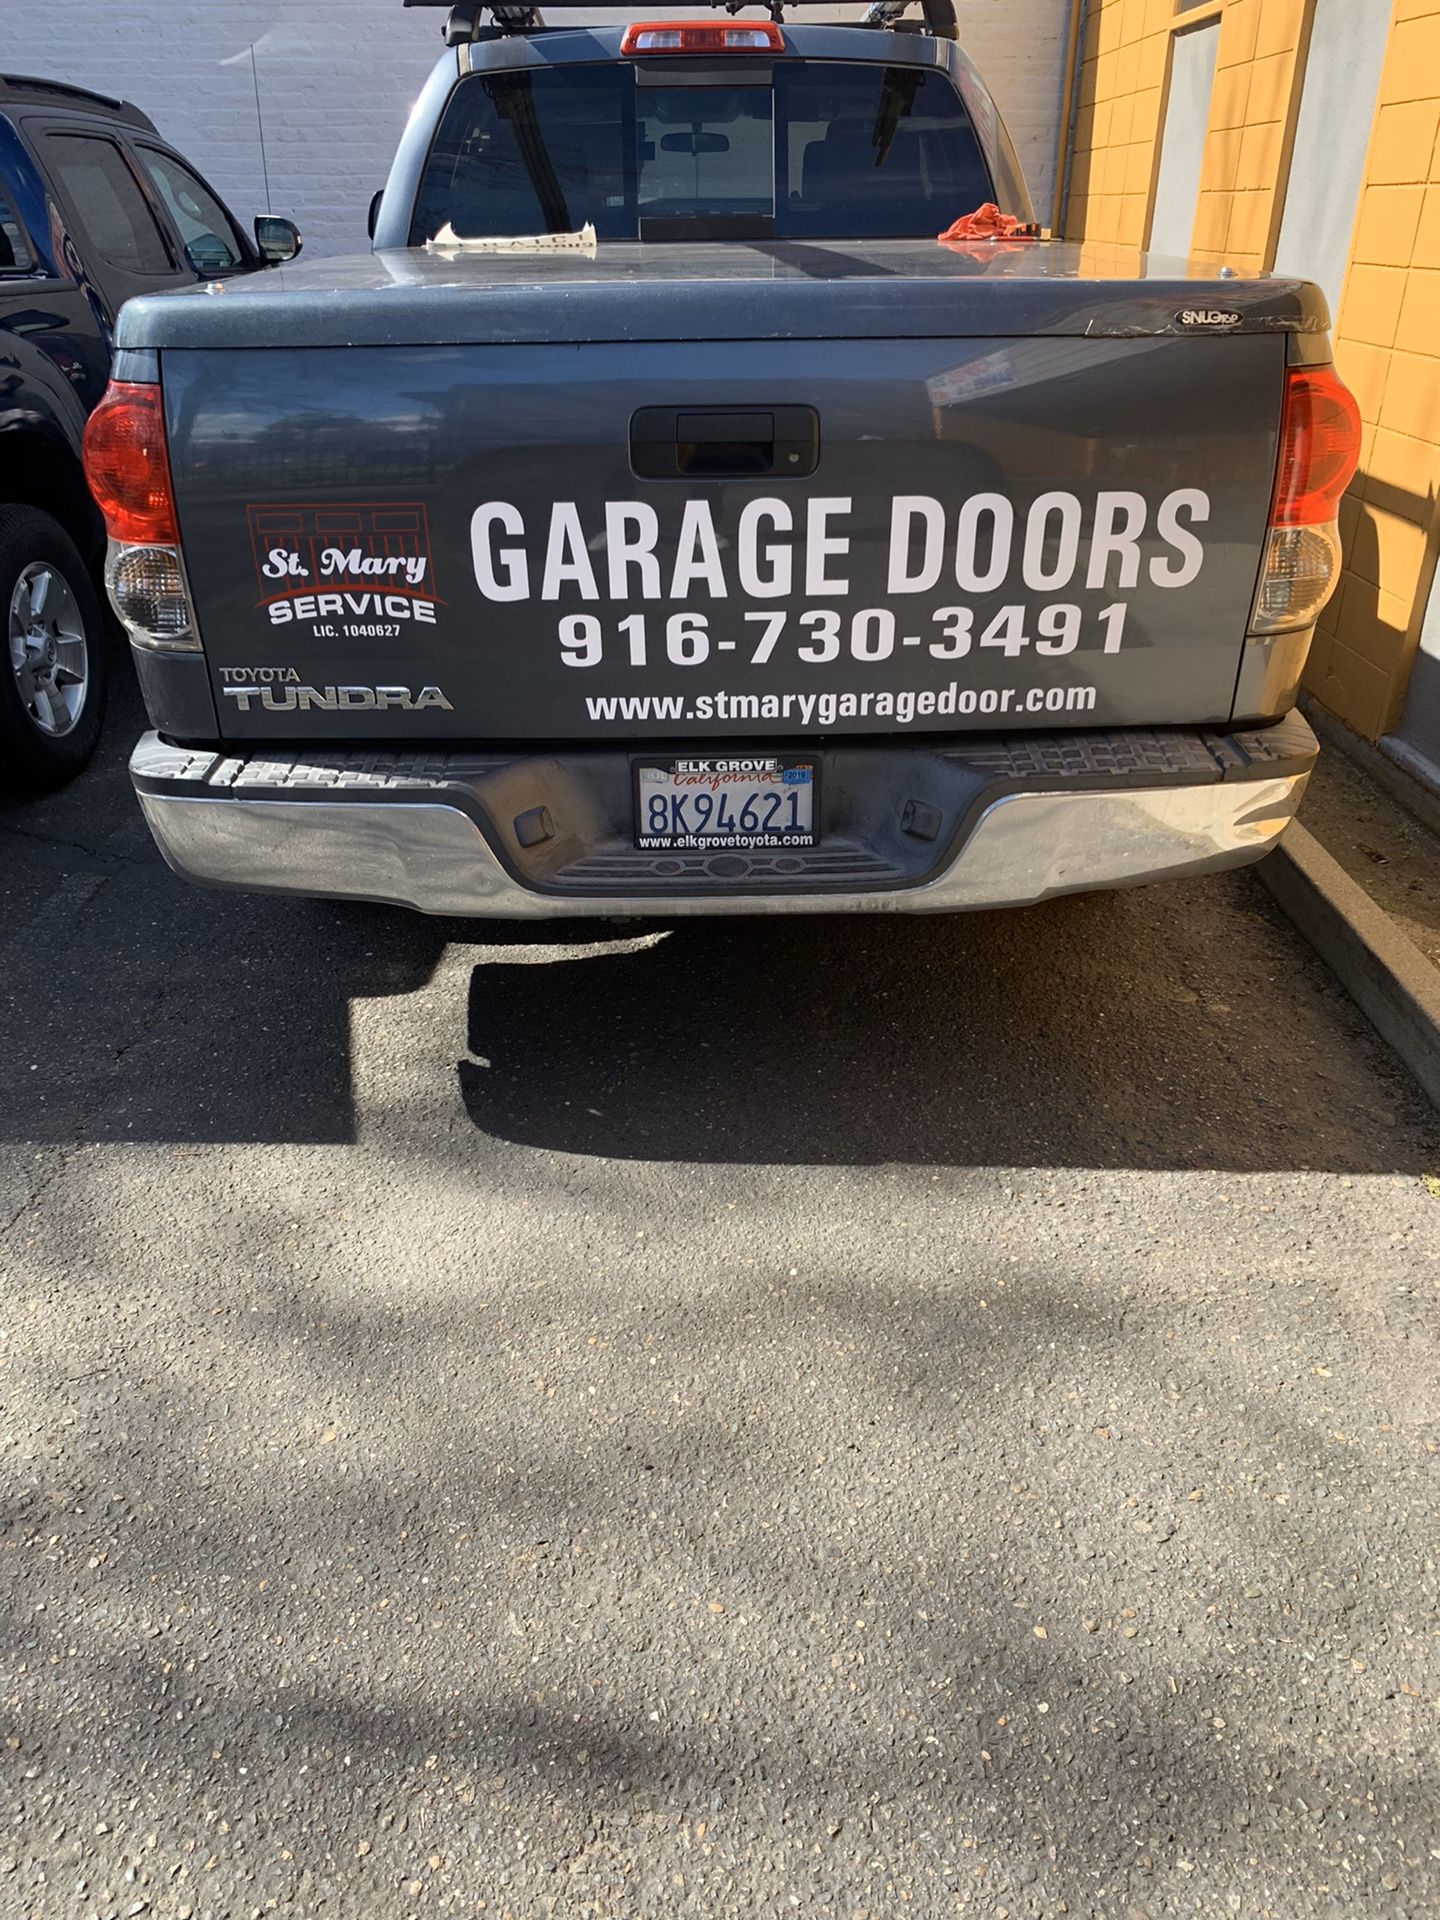 All parts for garage door and opener